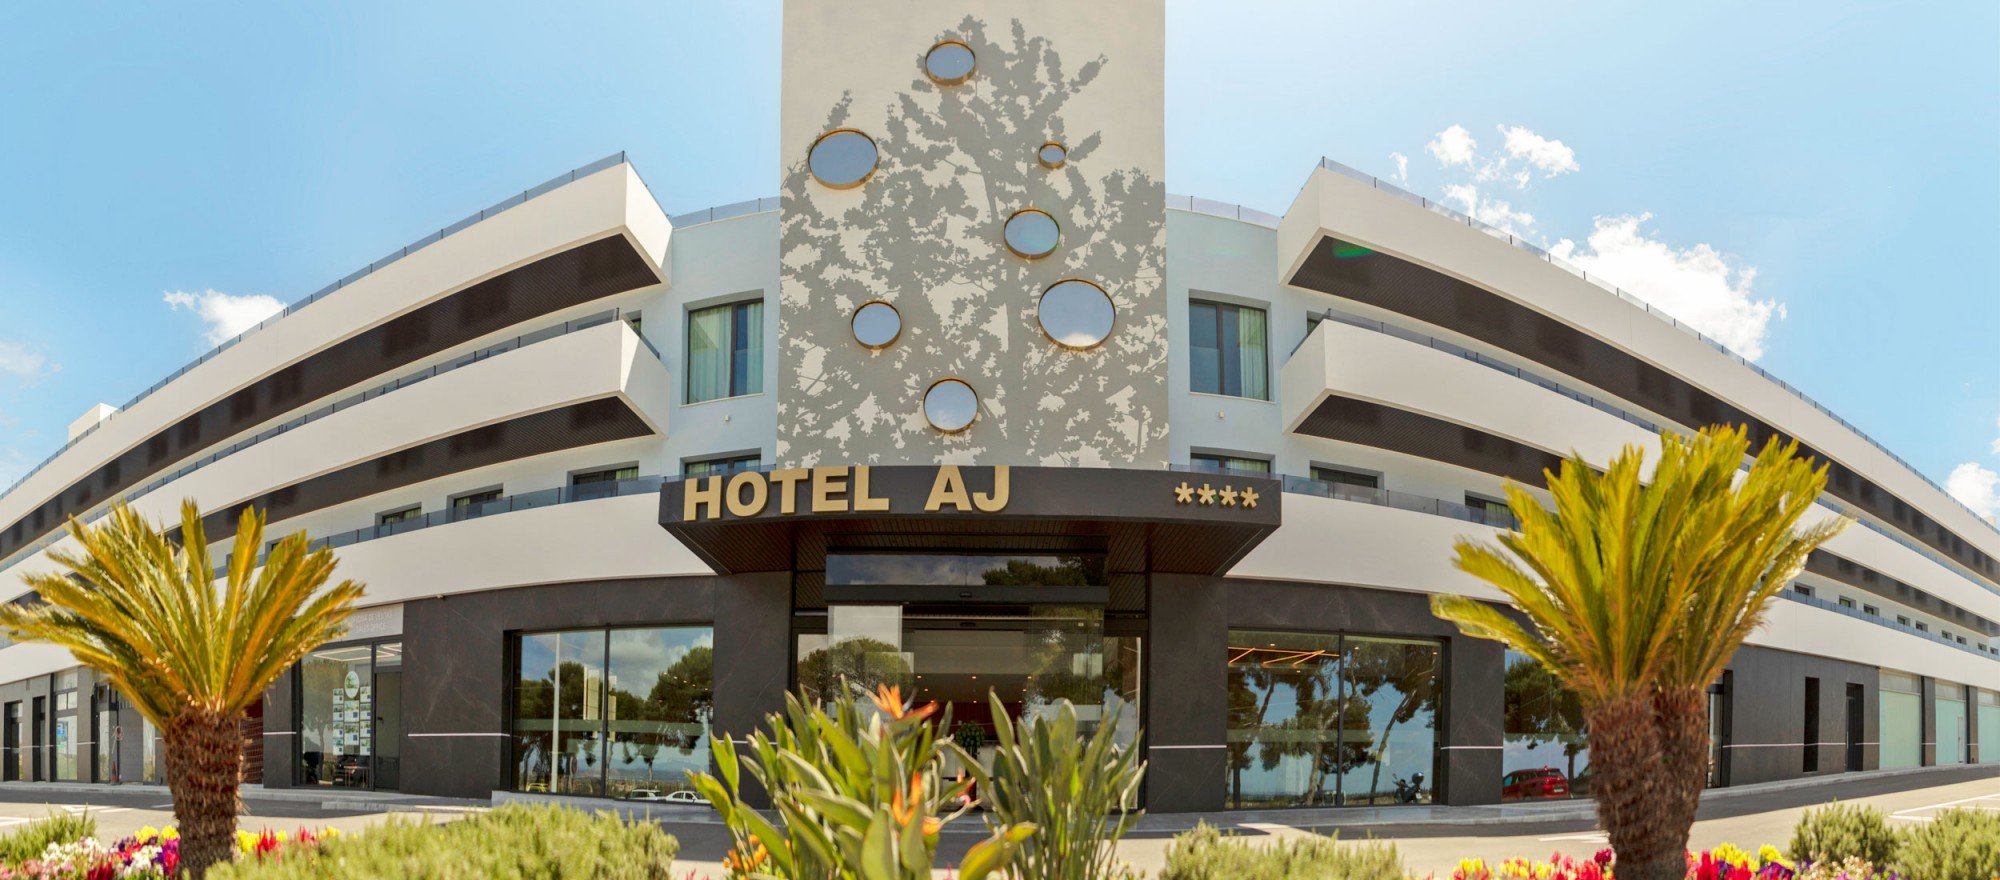 Hotel AJ